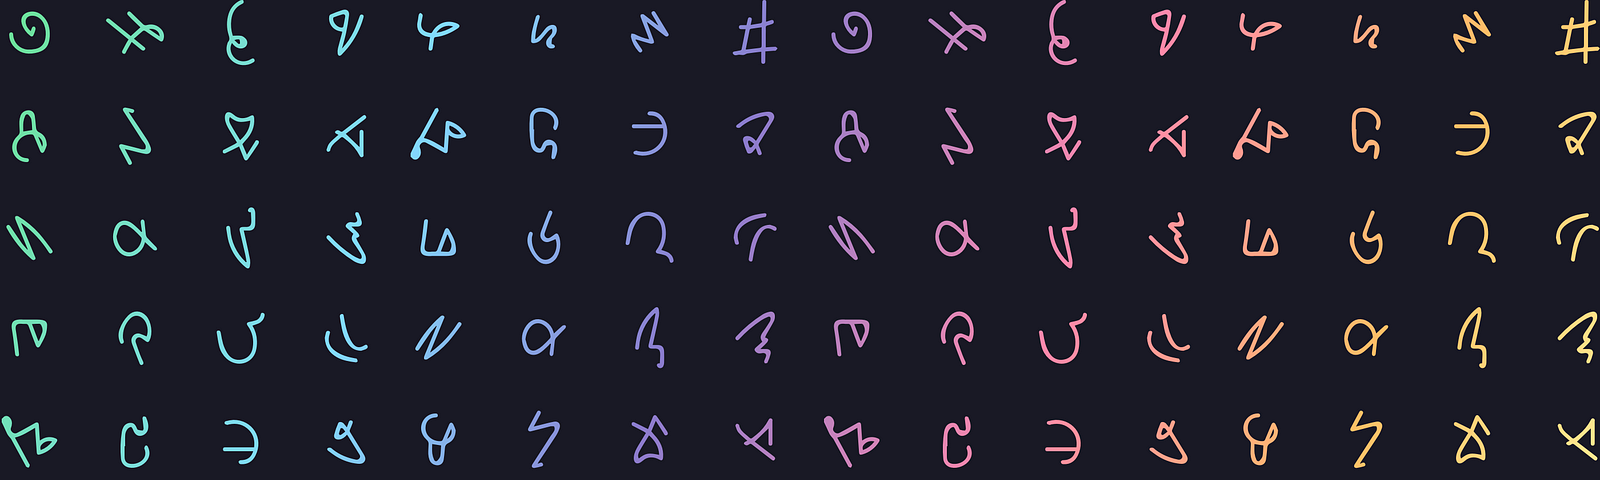 Repeated multi-colored symbols over a dark background